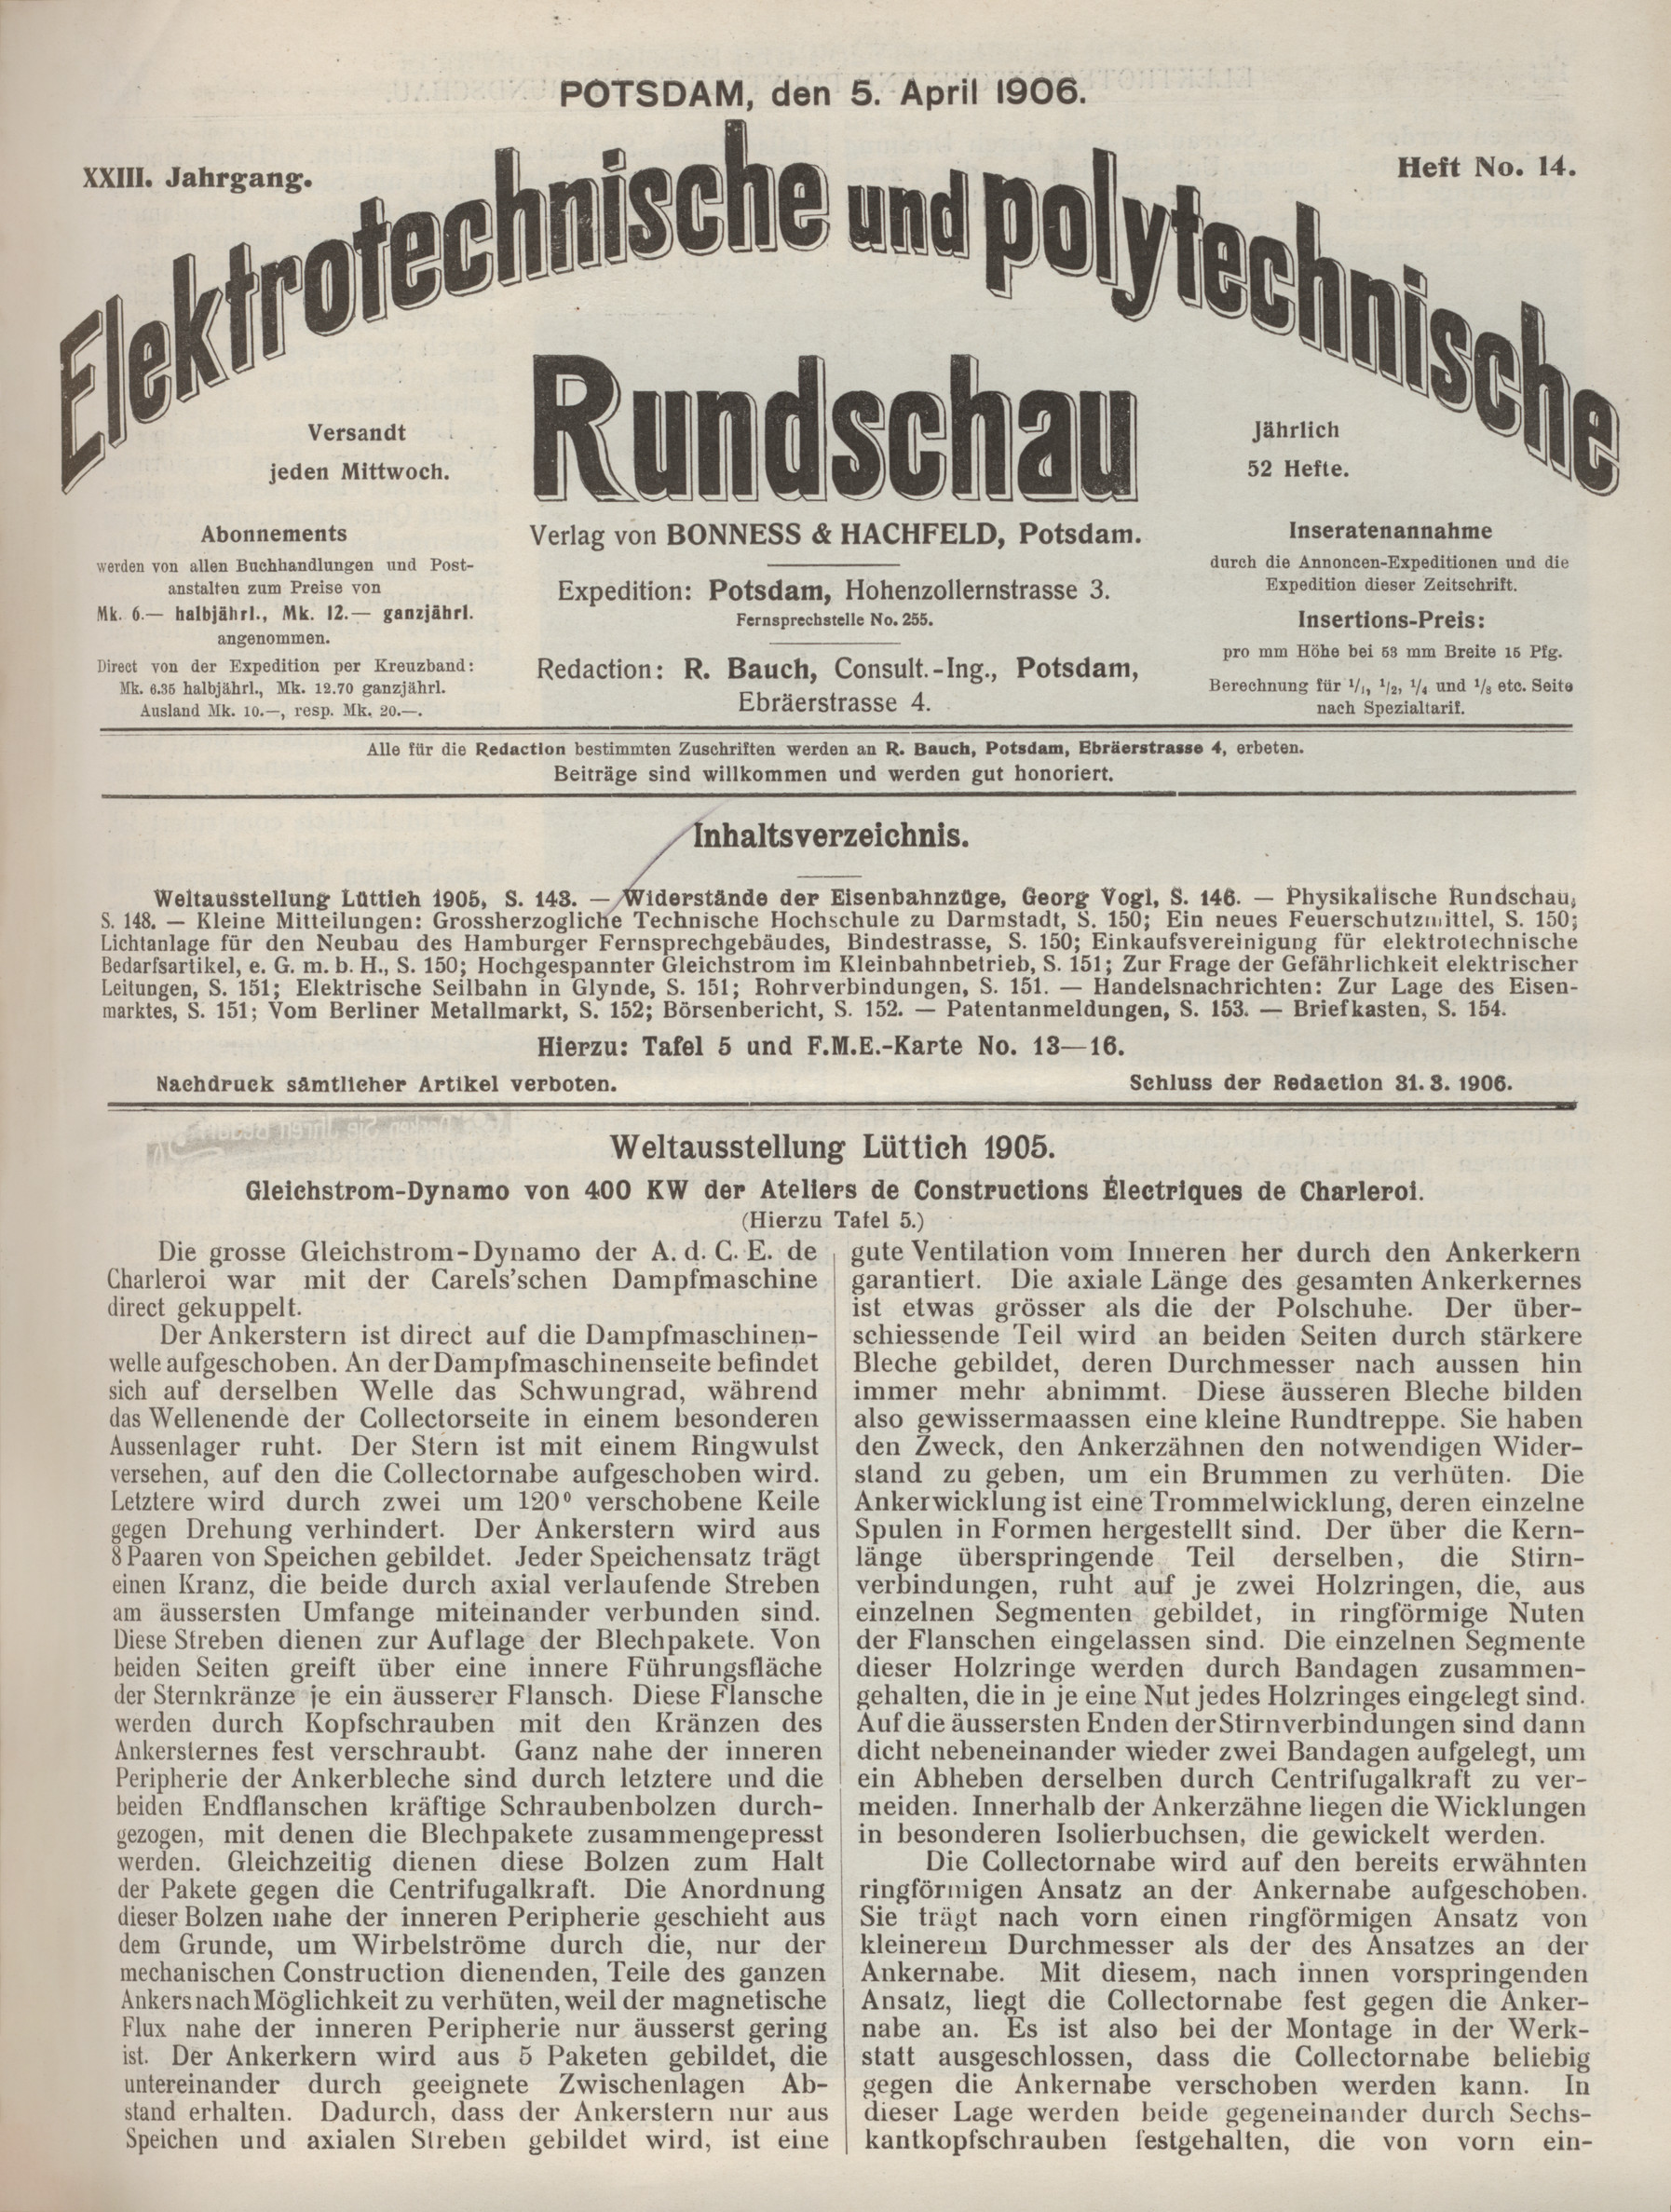 Elektrotechnische und polytechnische Rundschau, XXIII. Jahrgang, Heft No. 14